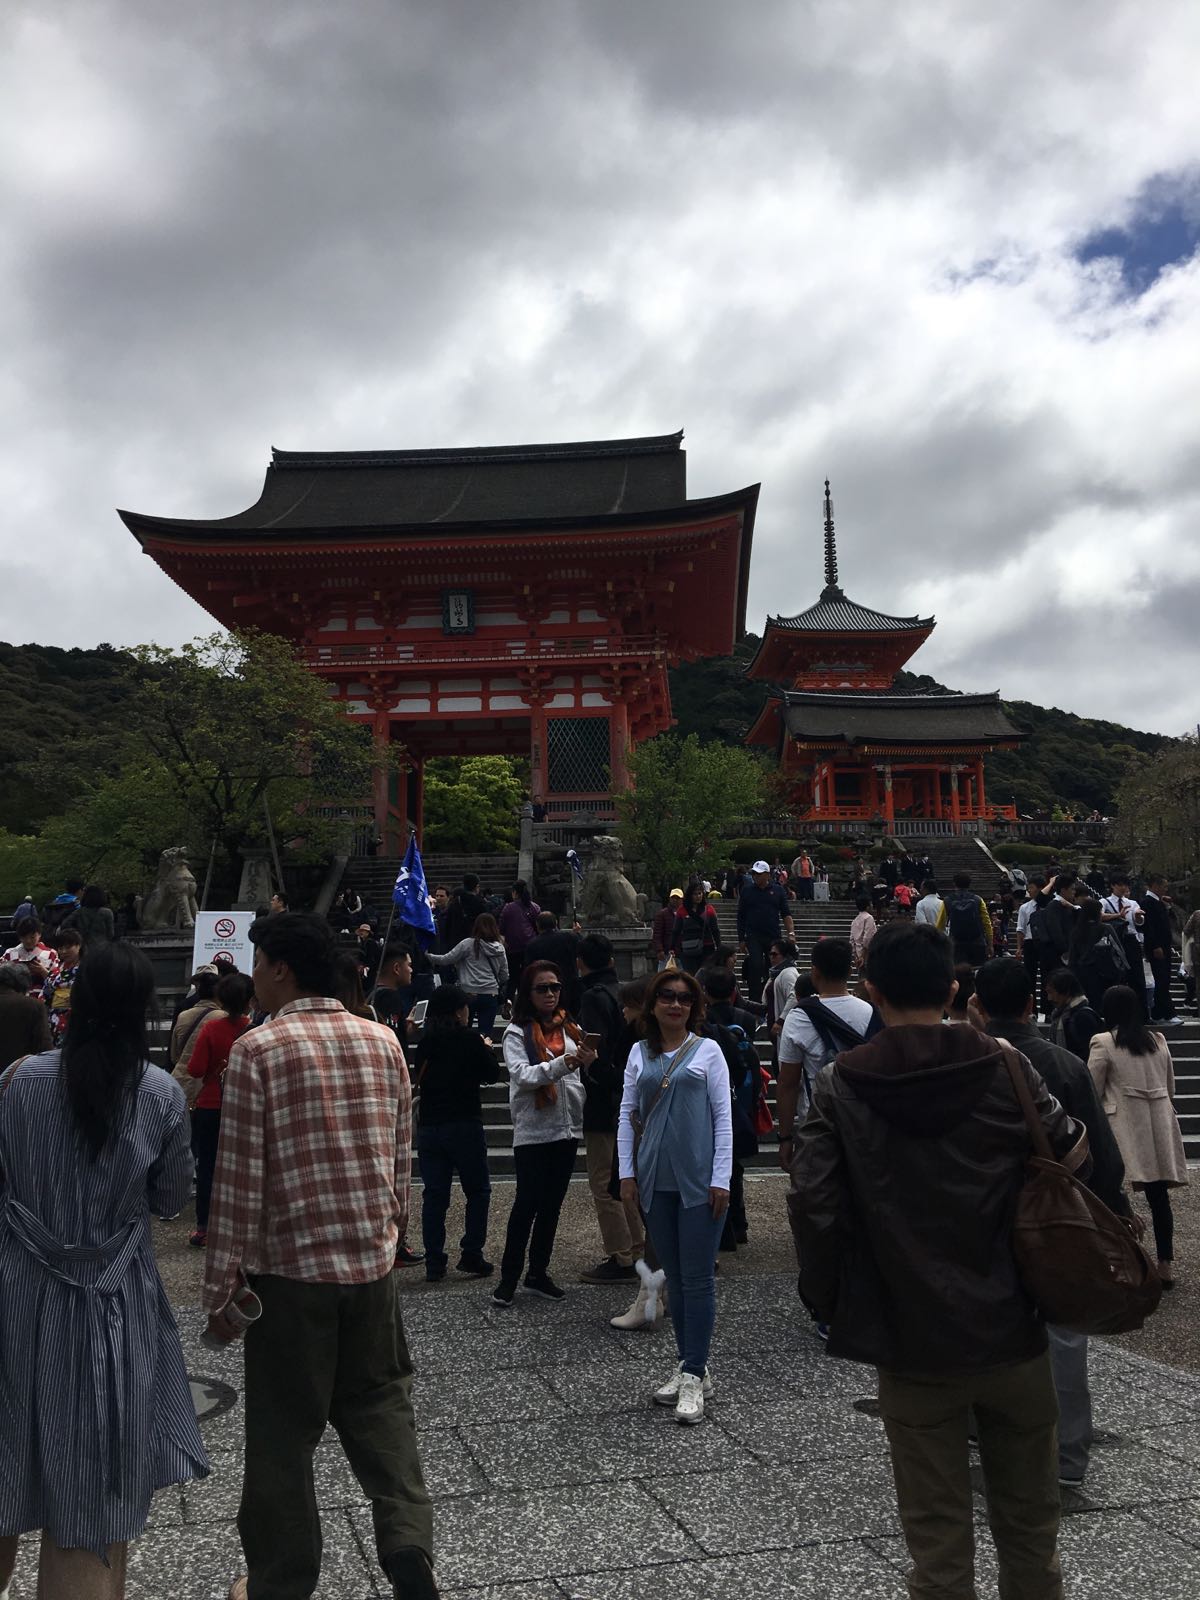 几年前来过一次京都，那时清水寺也上来过，只在门口拍了照片就走了没进去，